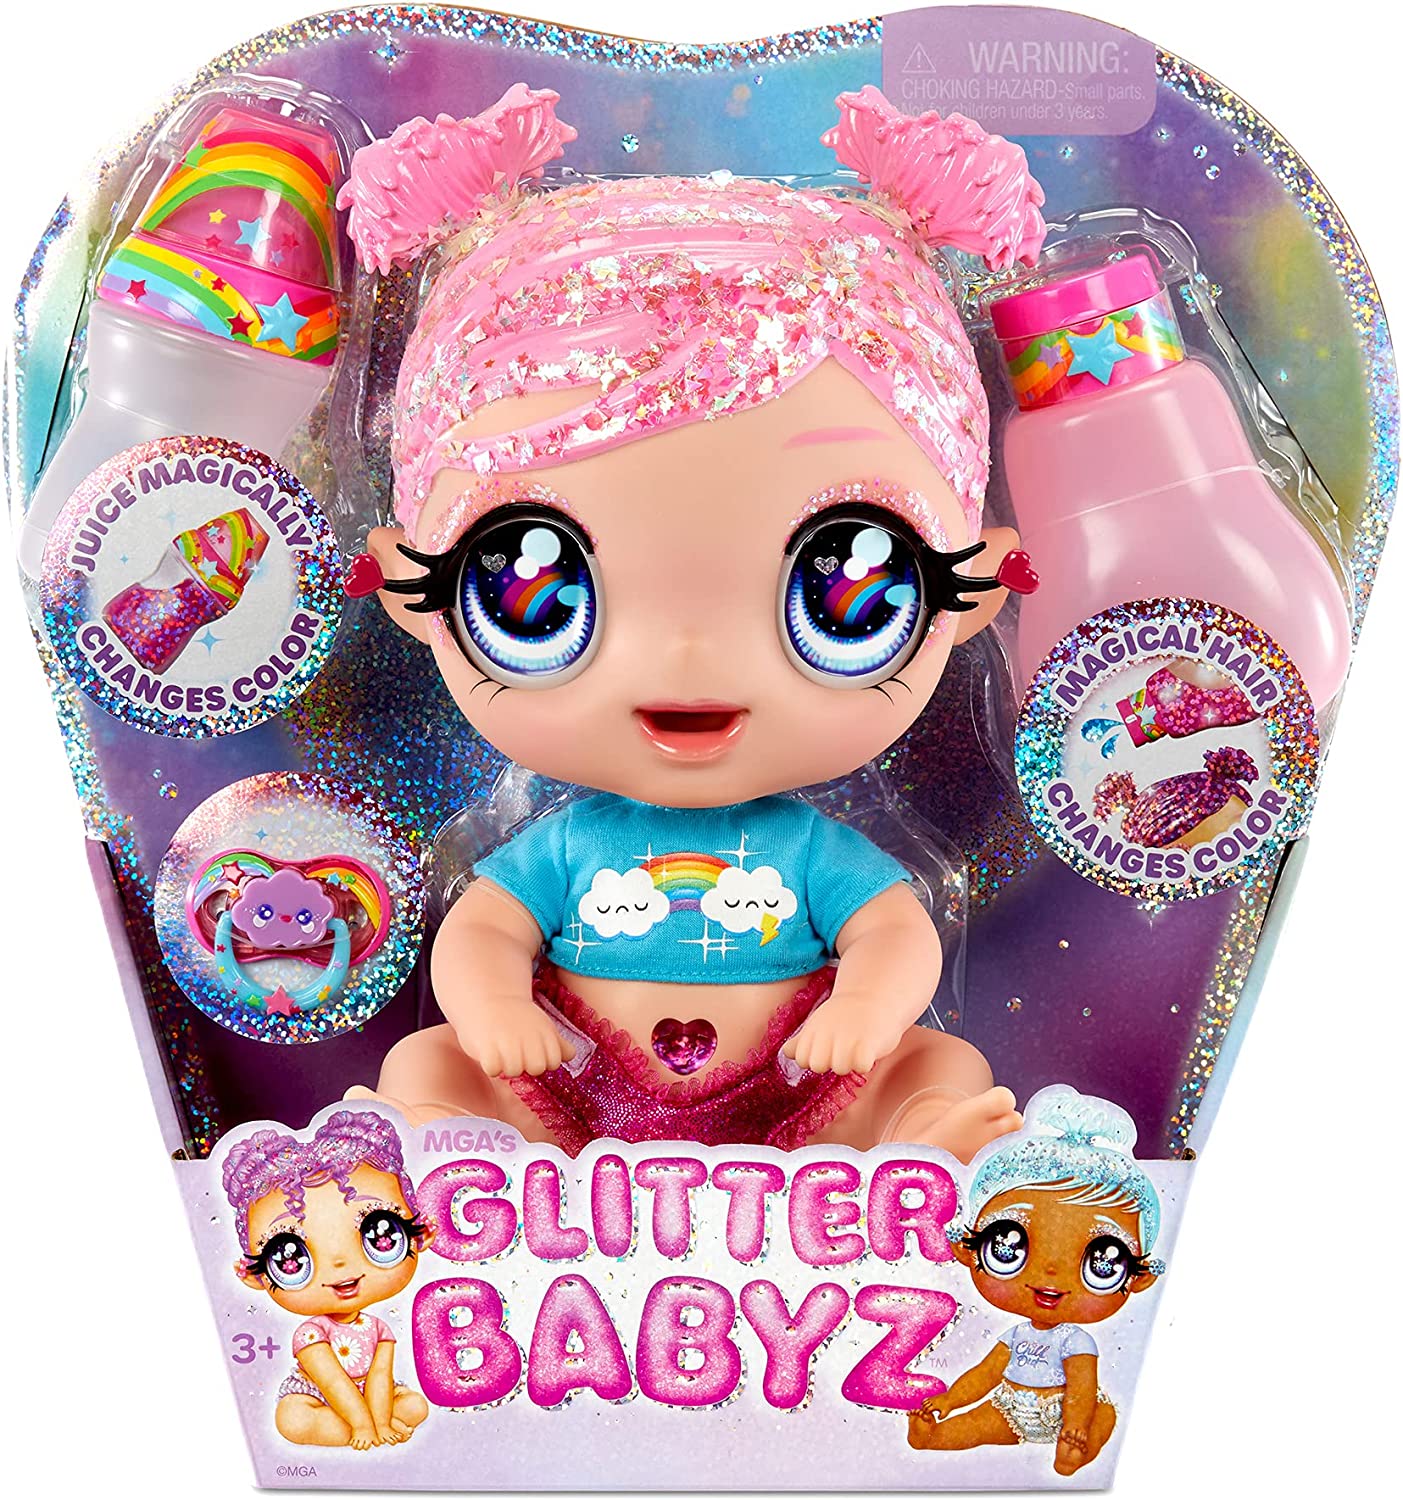 Glitter Babyz Color Chg tub